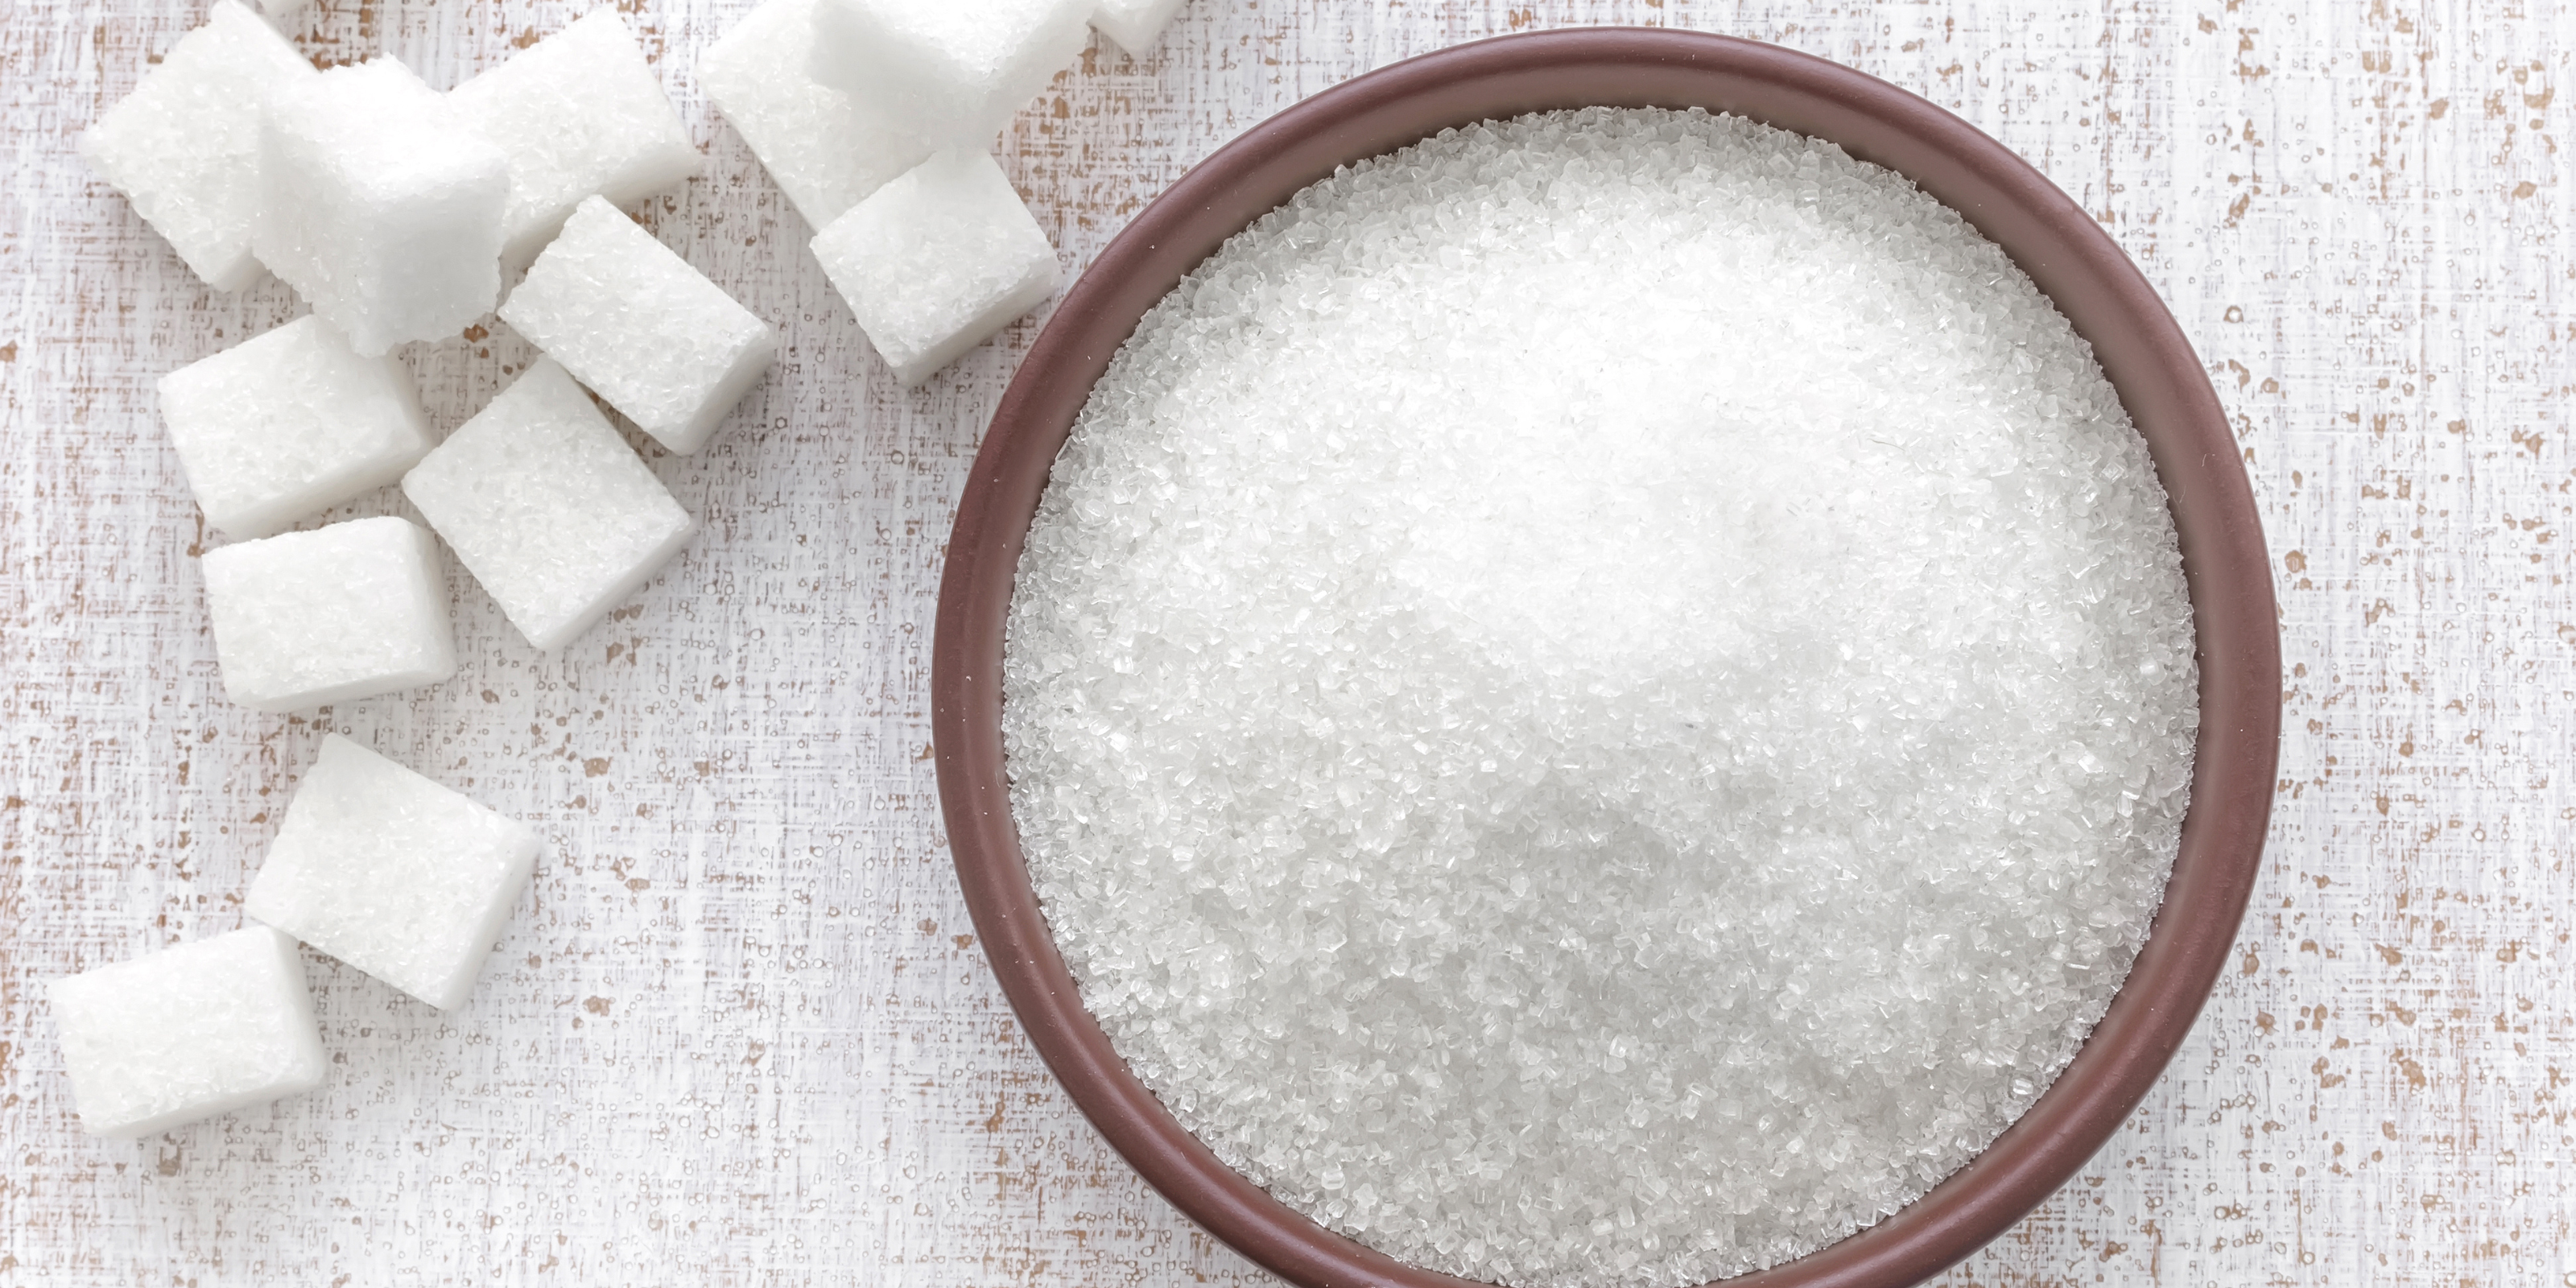 Tipps für weniger Zucker